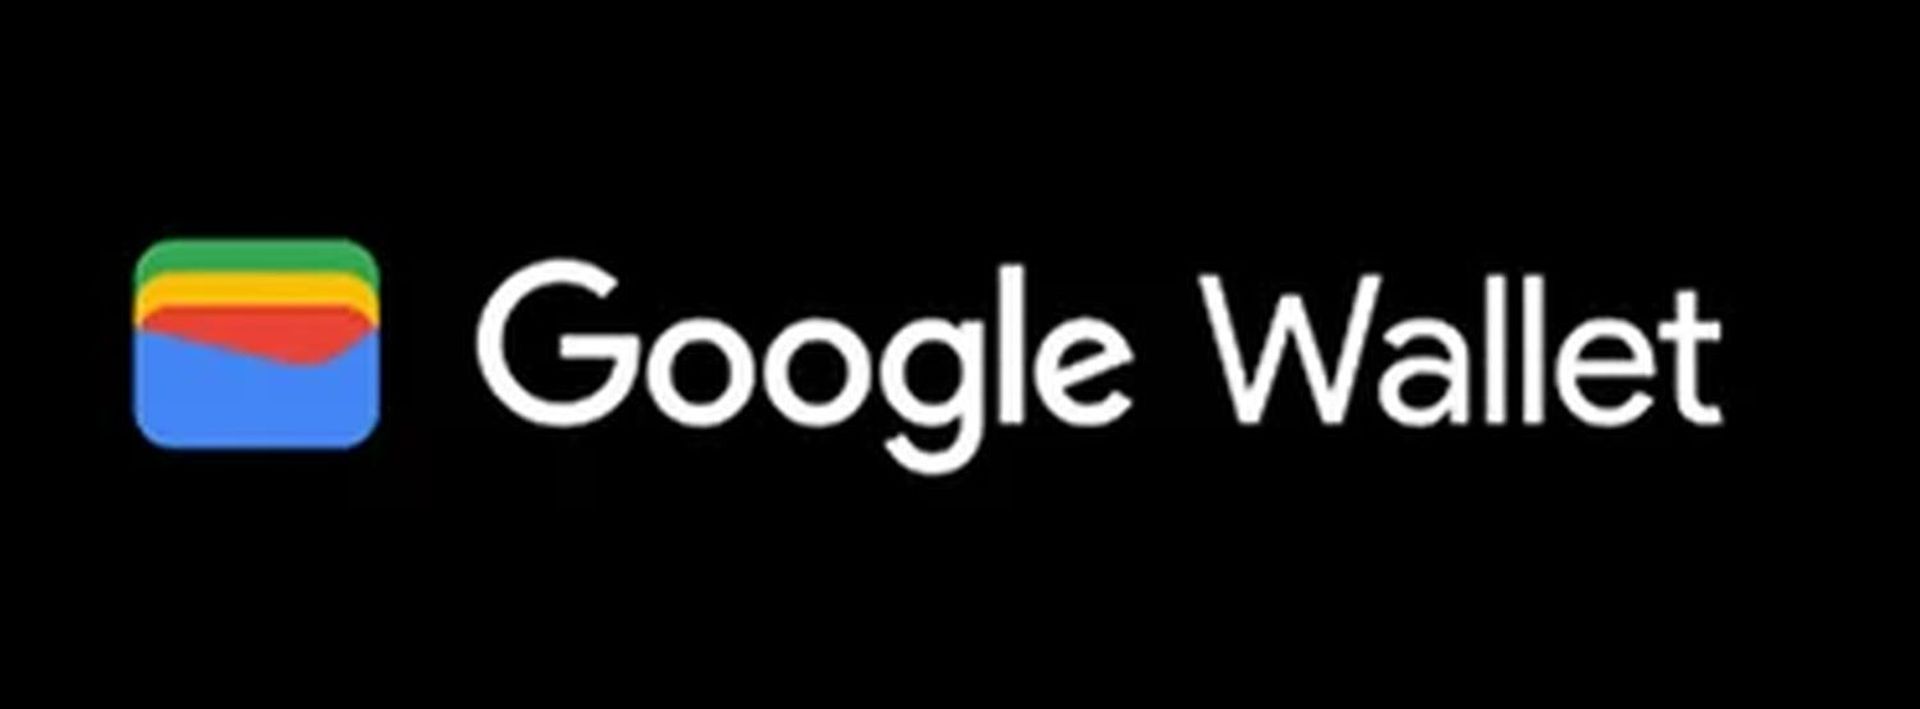 Finn ut hvorfor Google Wallet ikke fungerer med vår omfattende veiledning! Det er også Google Wallet-alternativer verdt å prøve. Utforsk nå!